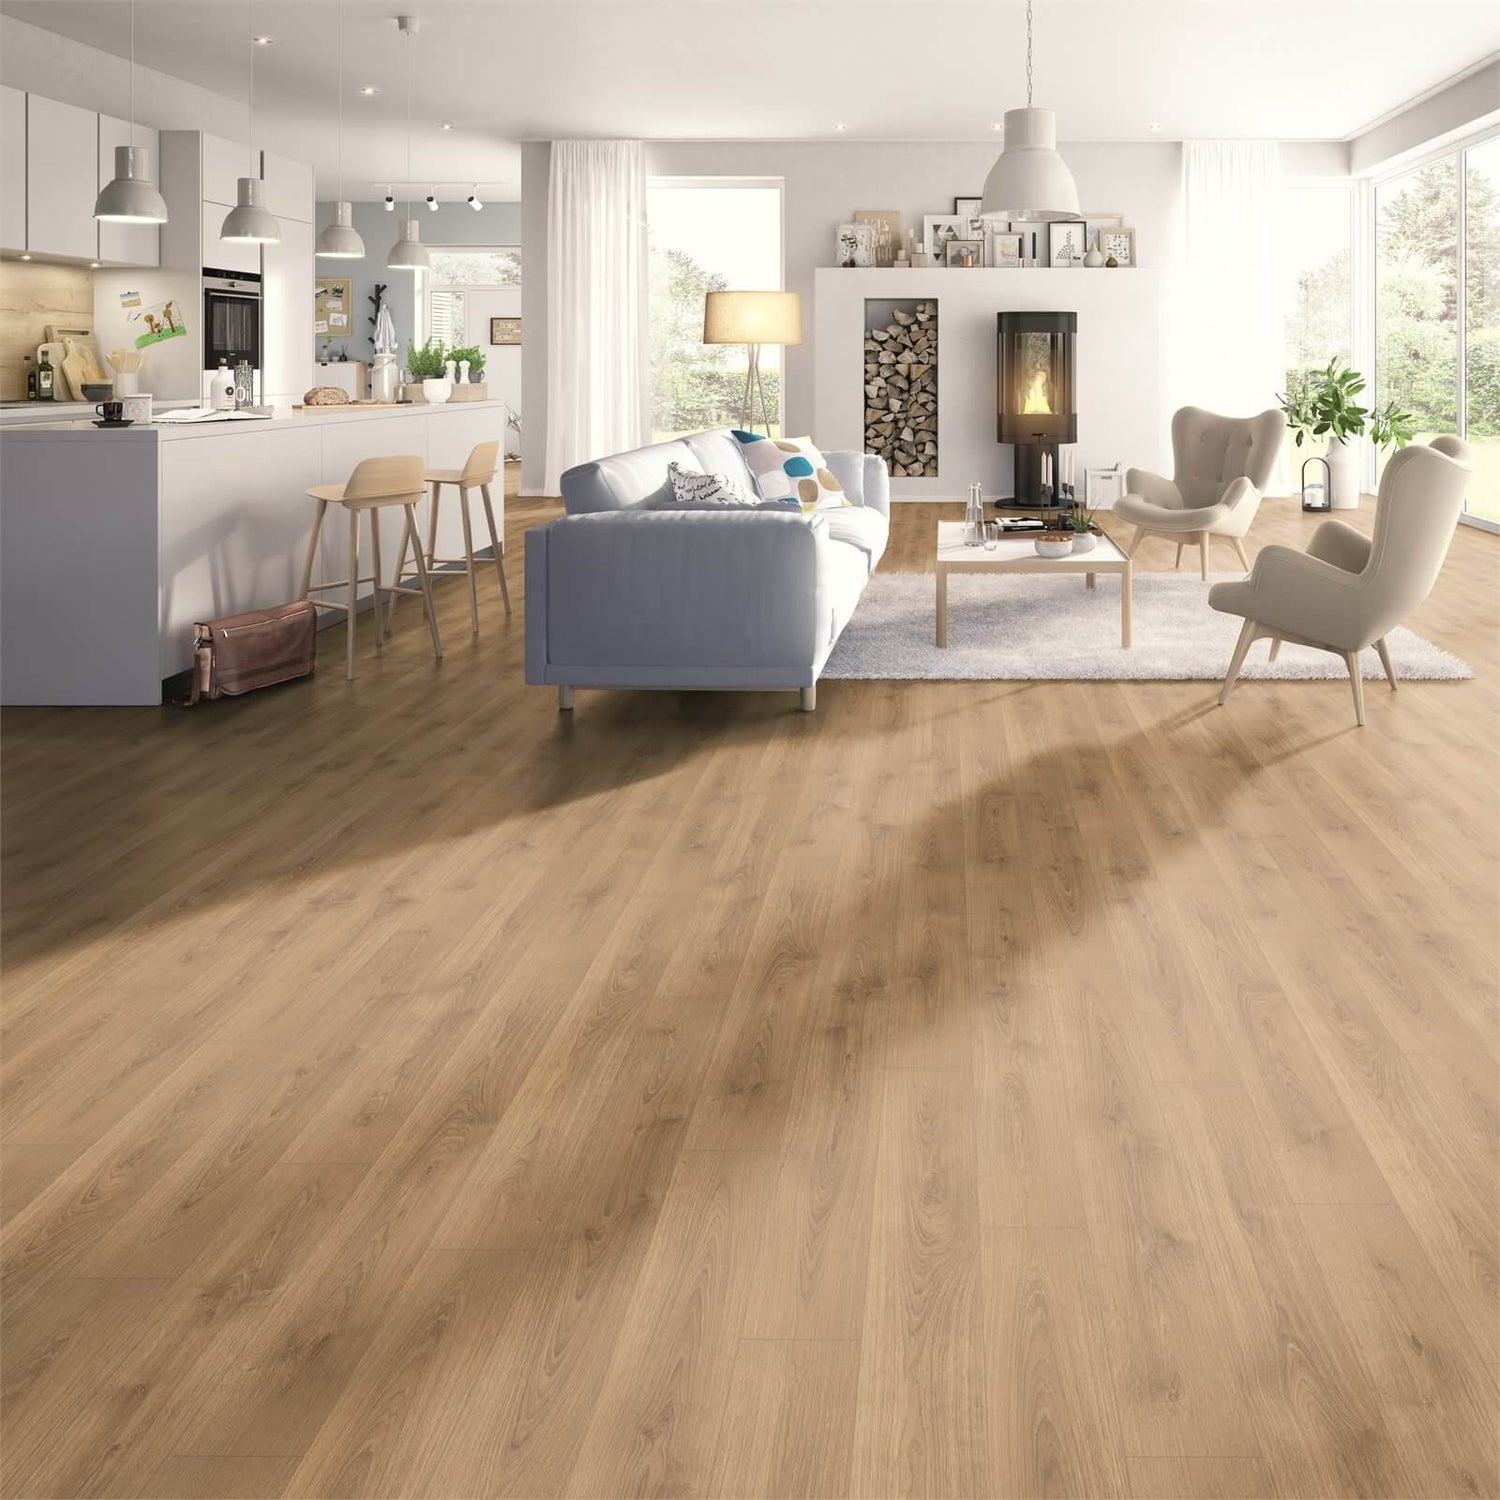 Honey Brook Oak Laminate Flooring, Golden Oak Laminate Flooring Homebase